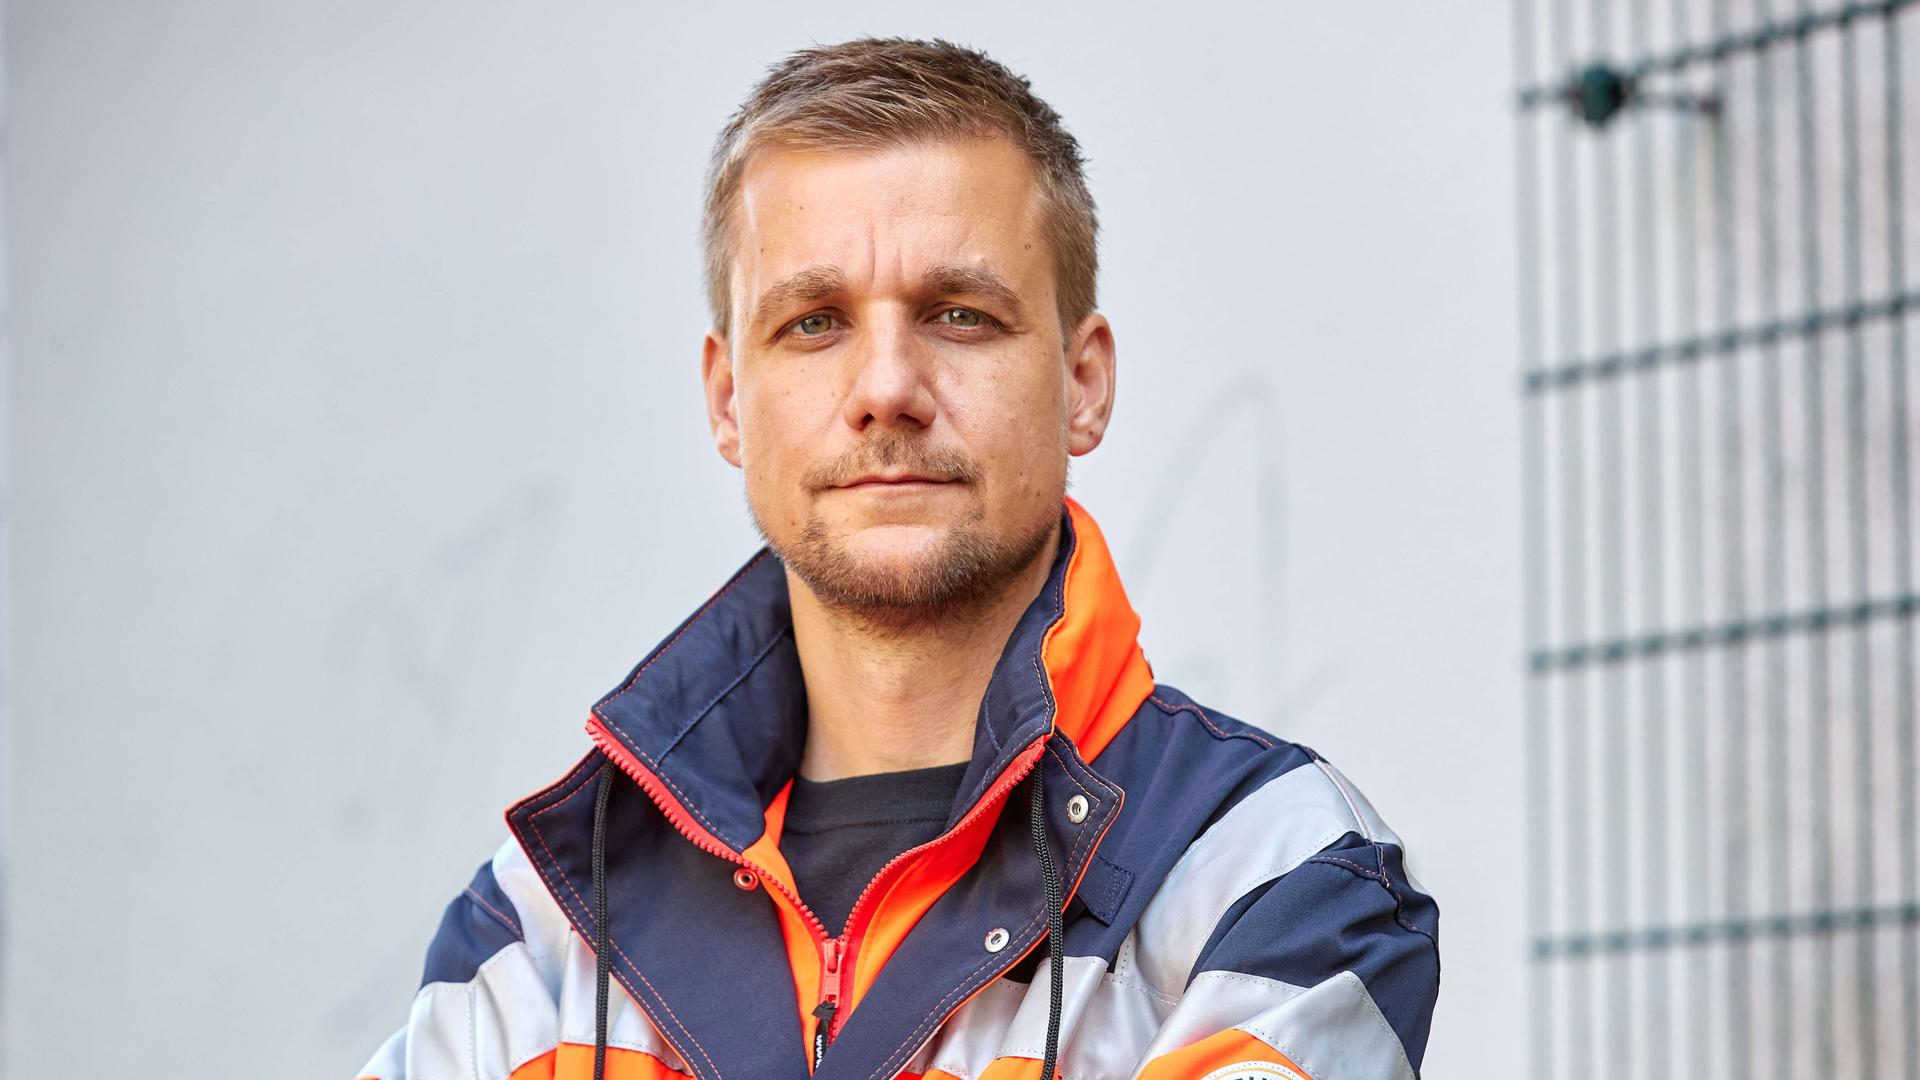 Autor und Sanitäter: Tobias Schlegel zwischen Fernsehstudio und Rettungswagen